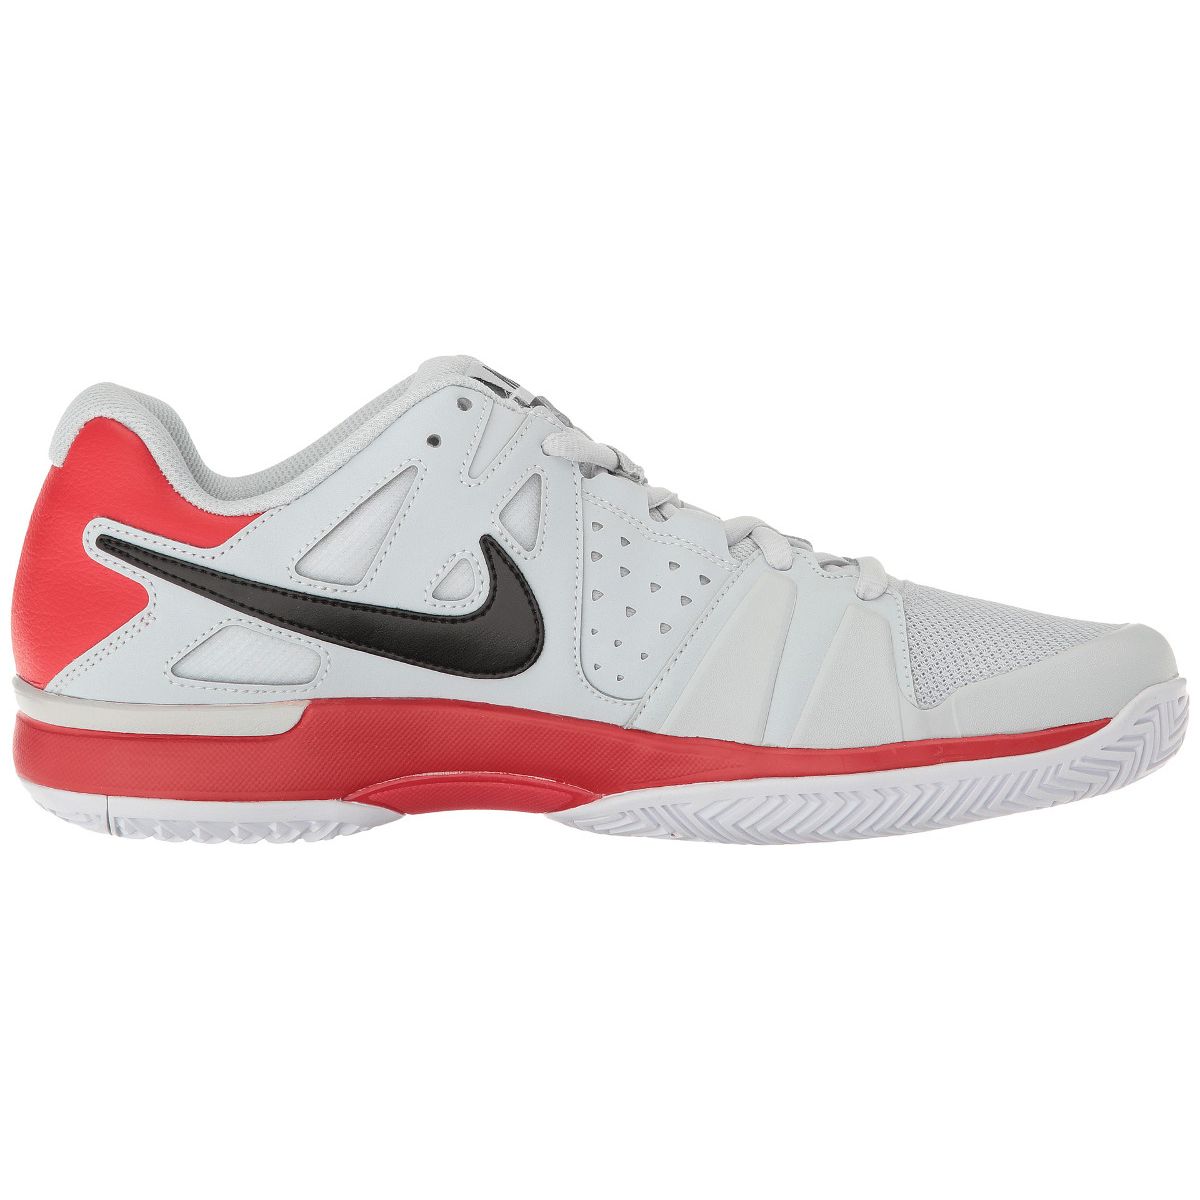 Nike Air Vapor Advantage Men's Tennis Shoes 599359-004